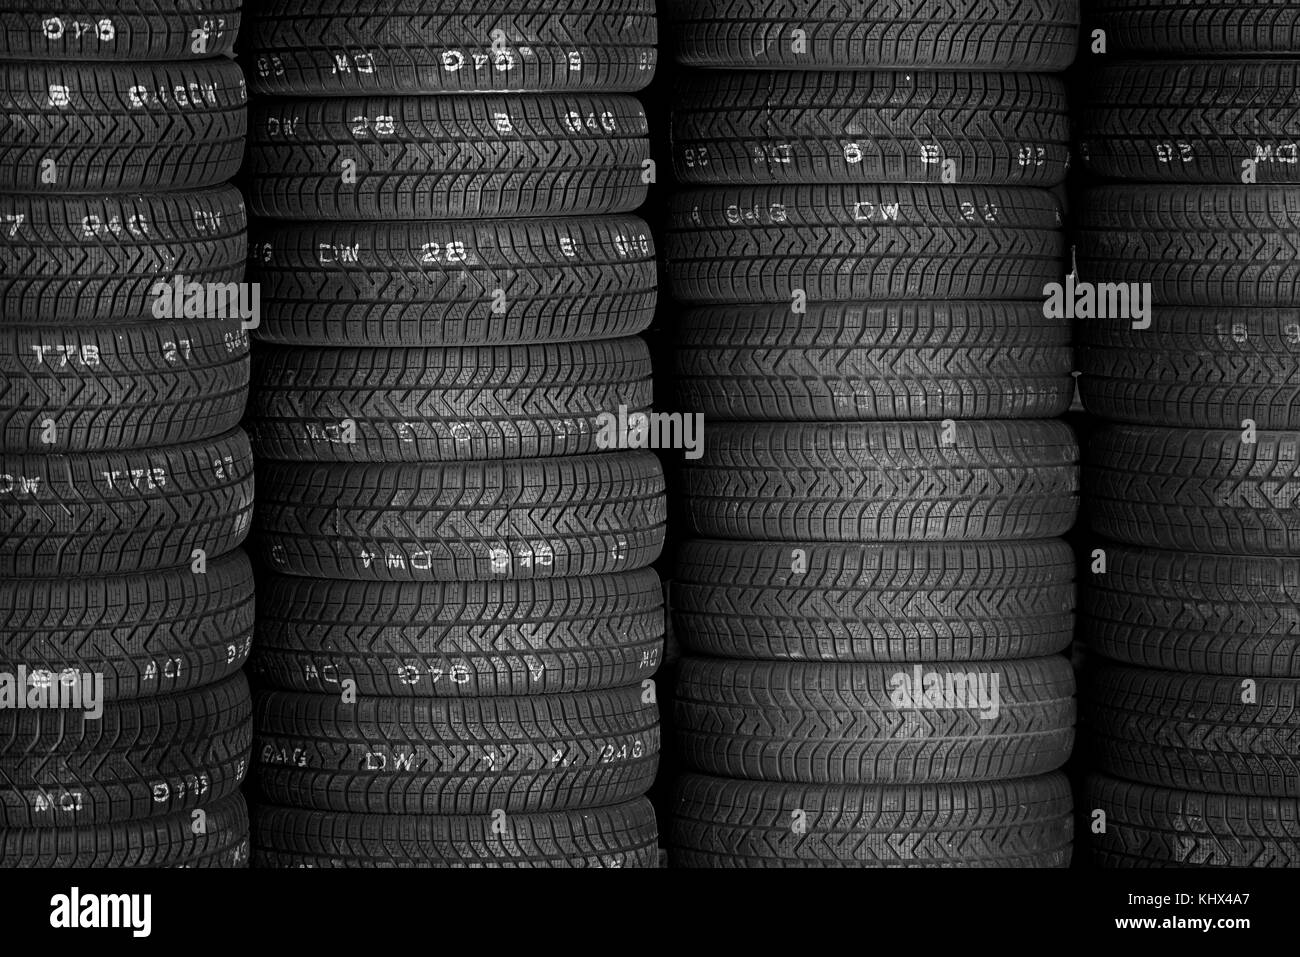 Pneumatici per la vendita in un negozio di pneumatici - pile di pneumatici per auto Foto Stock